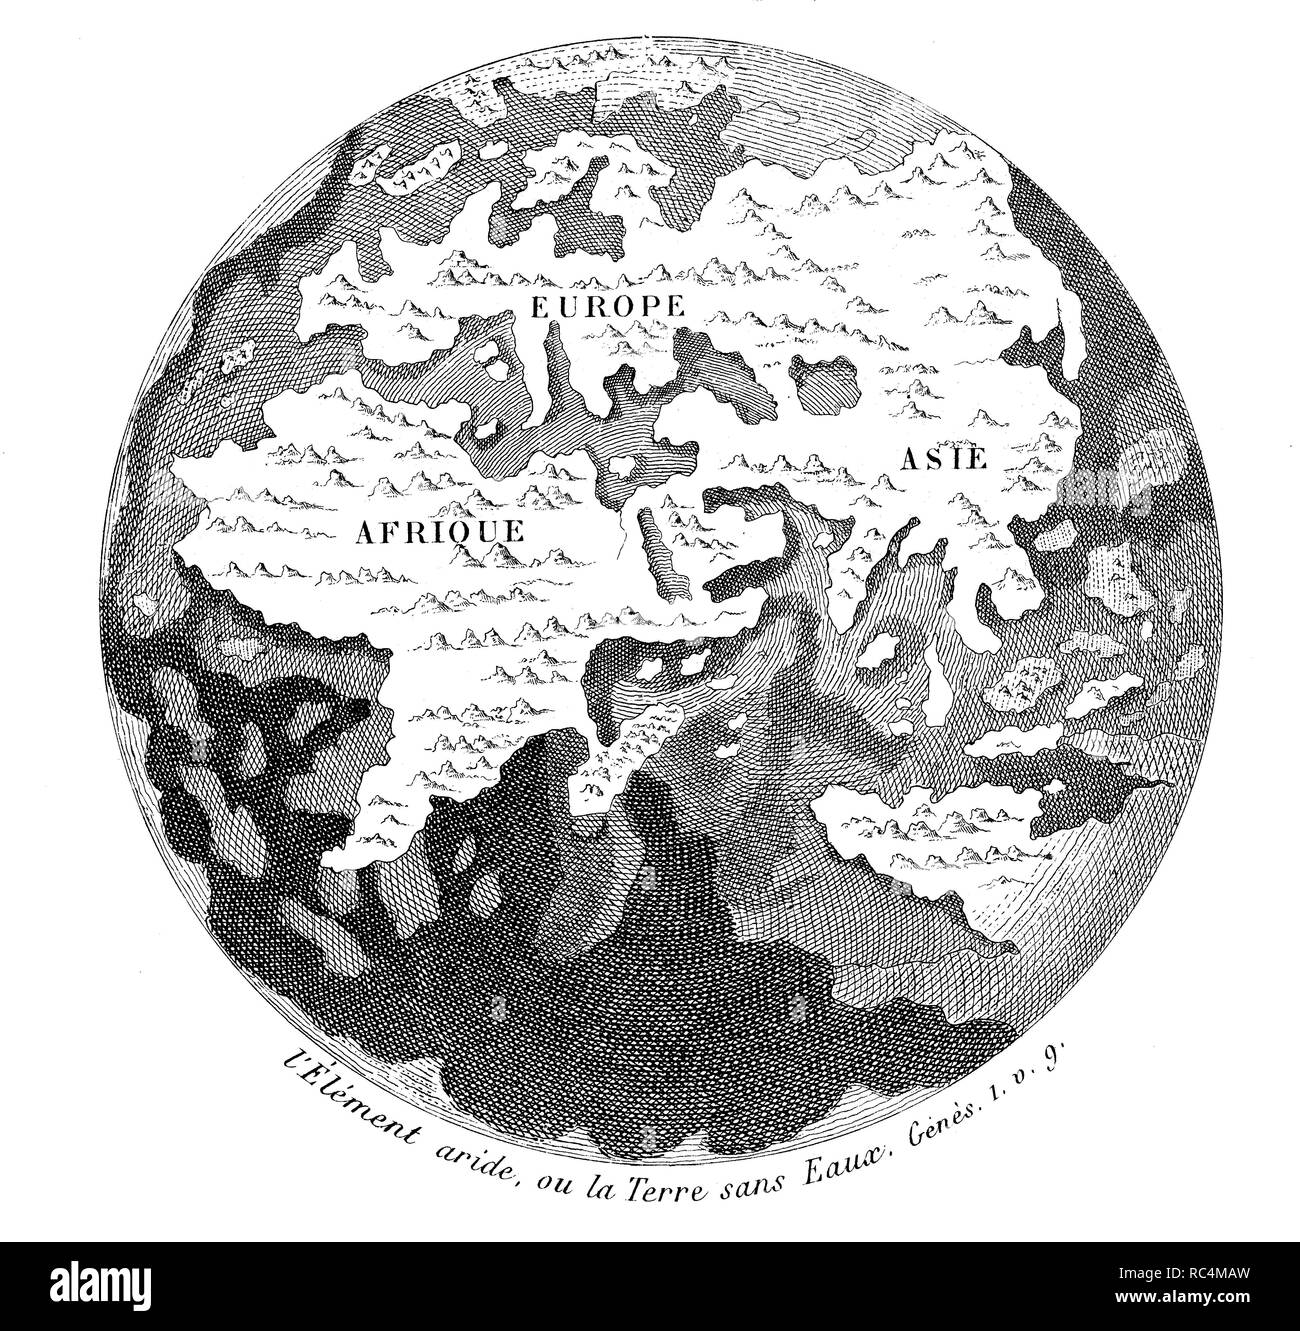 Historia sagrada. Creación del mundo. Separación de la tierra y los mares y formación de los continentes. Grabado de 1862. Stock Photo